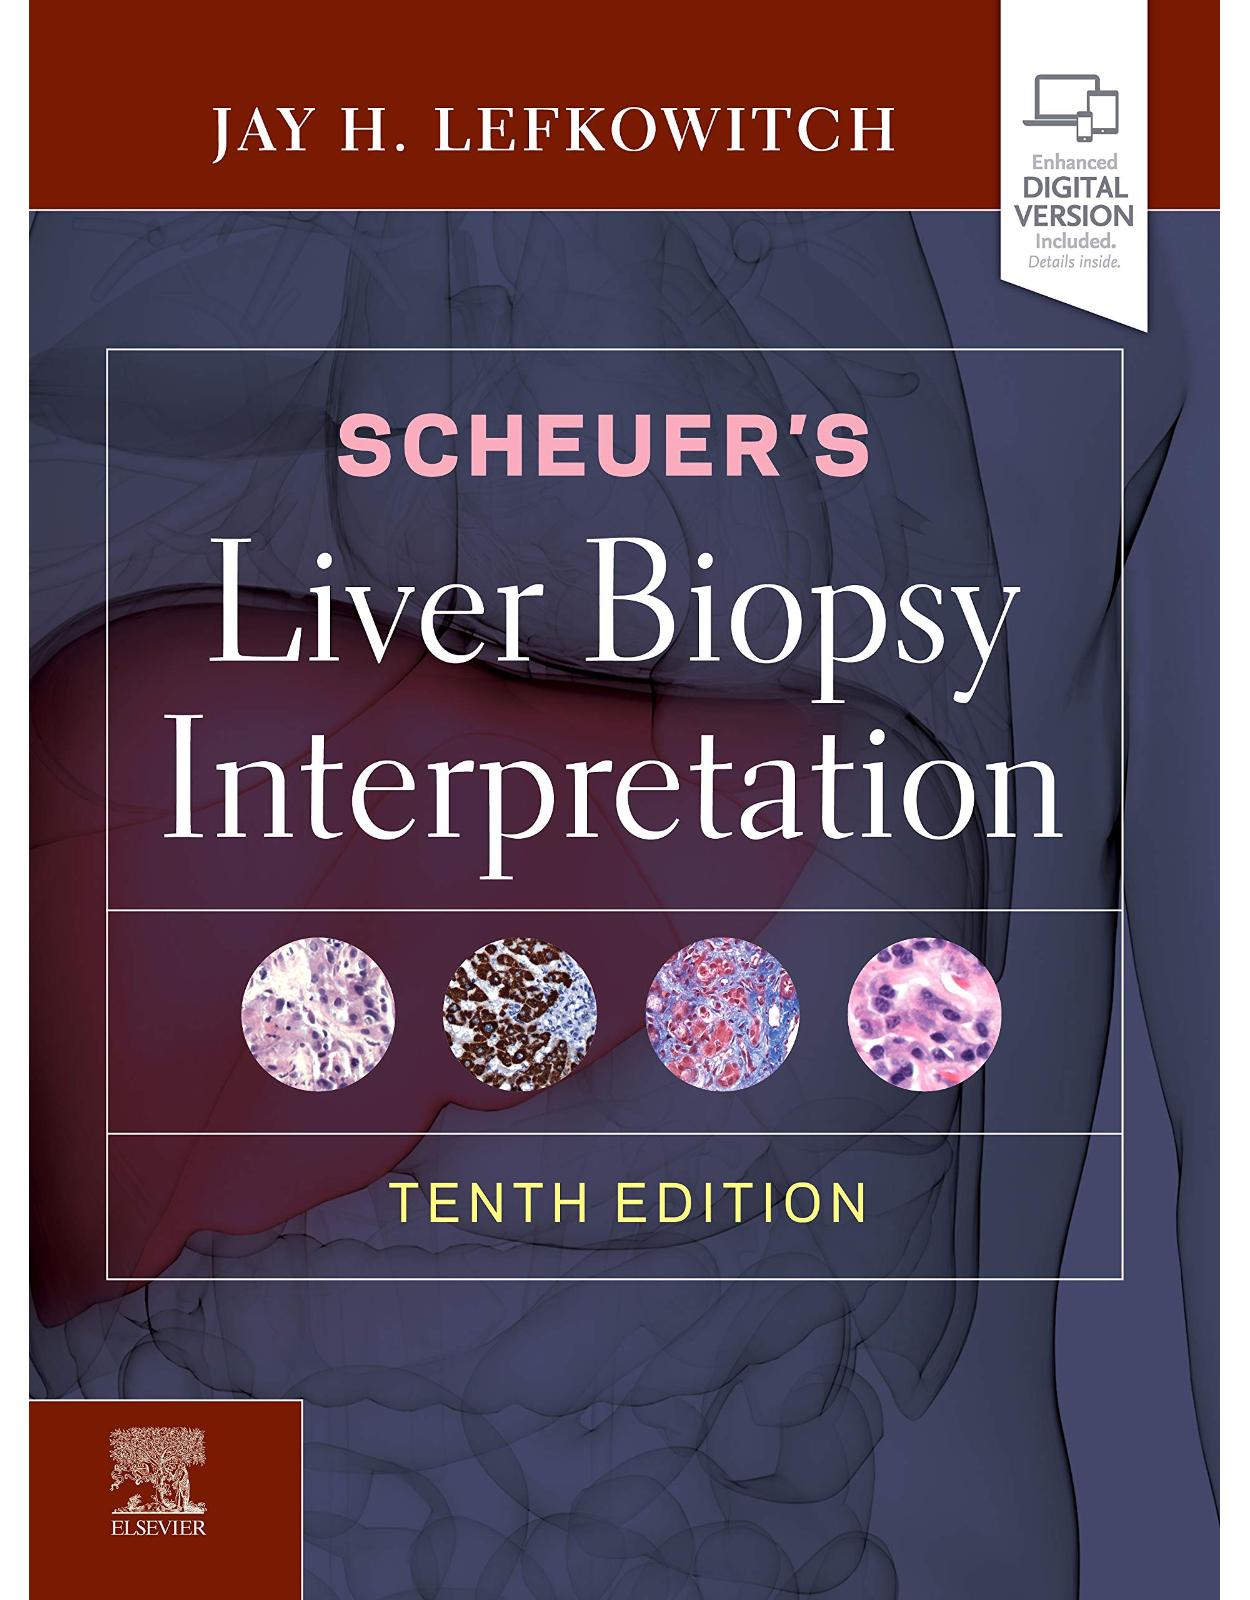 Scheuer’s Liver Biopsy Interpretation